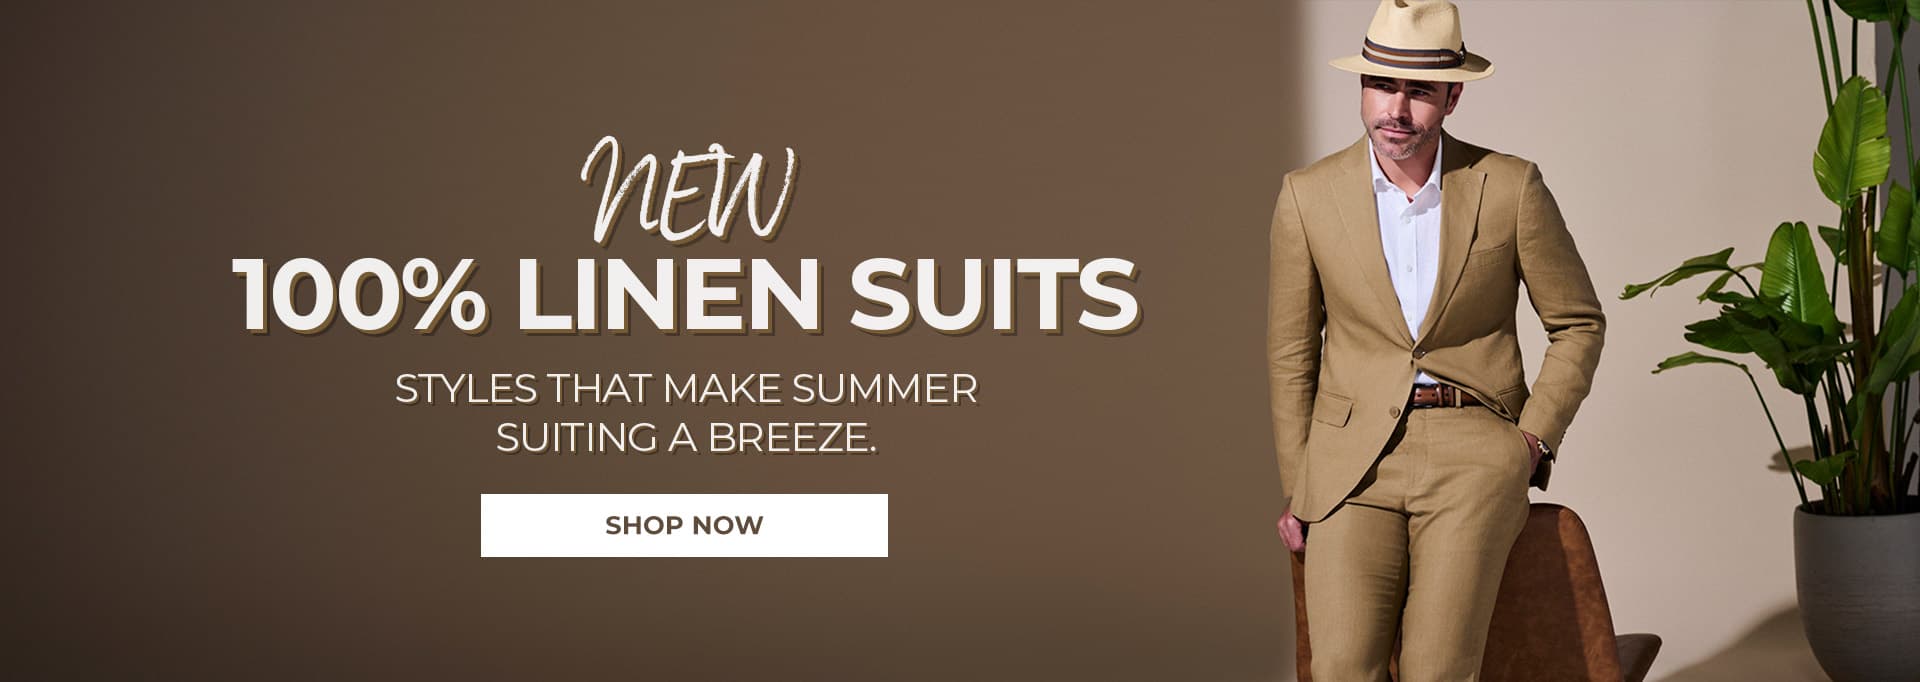 New 100% Linen Suits - Shop Now - Shop Now